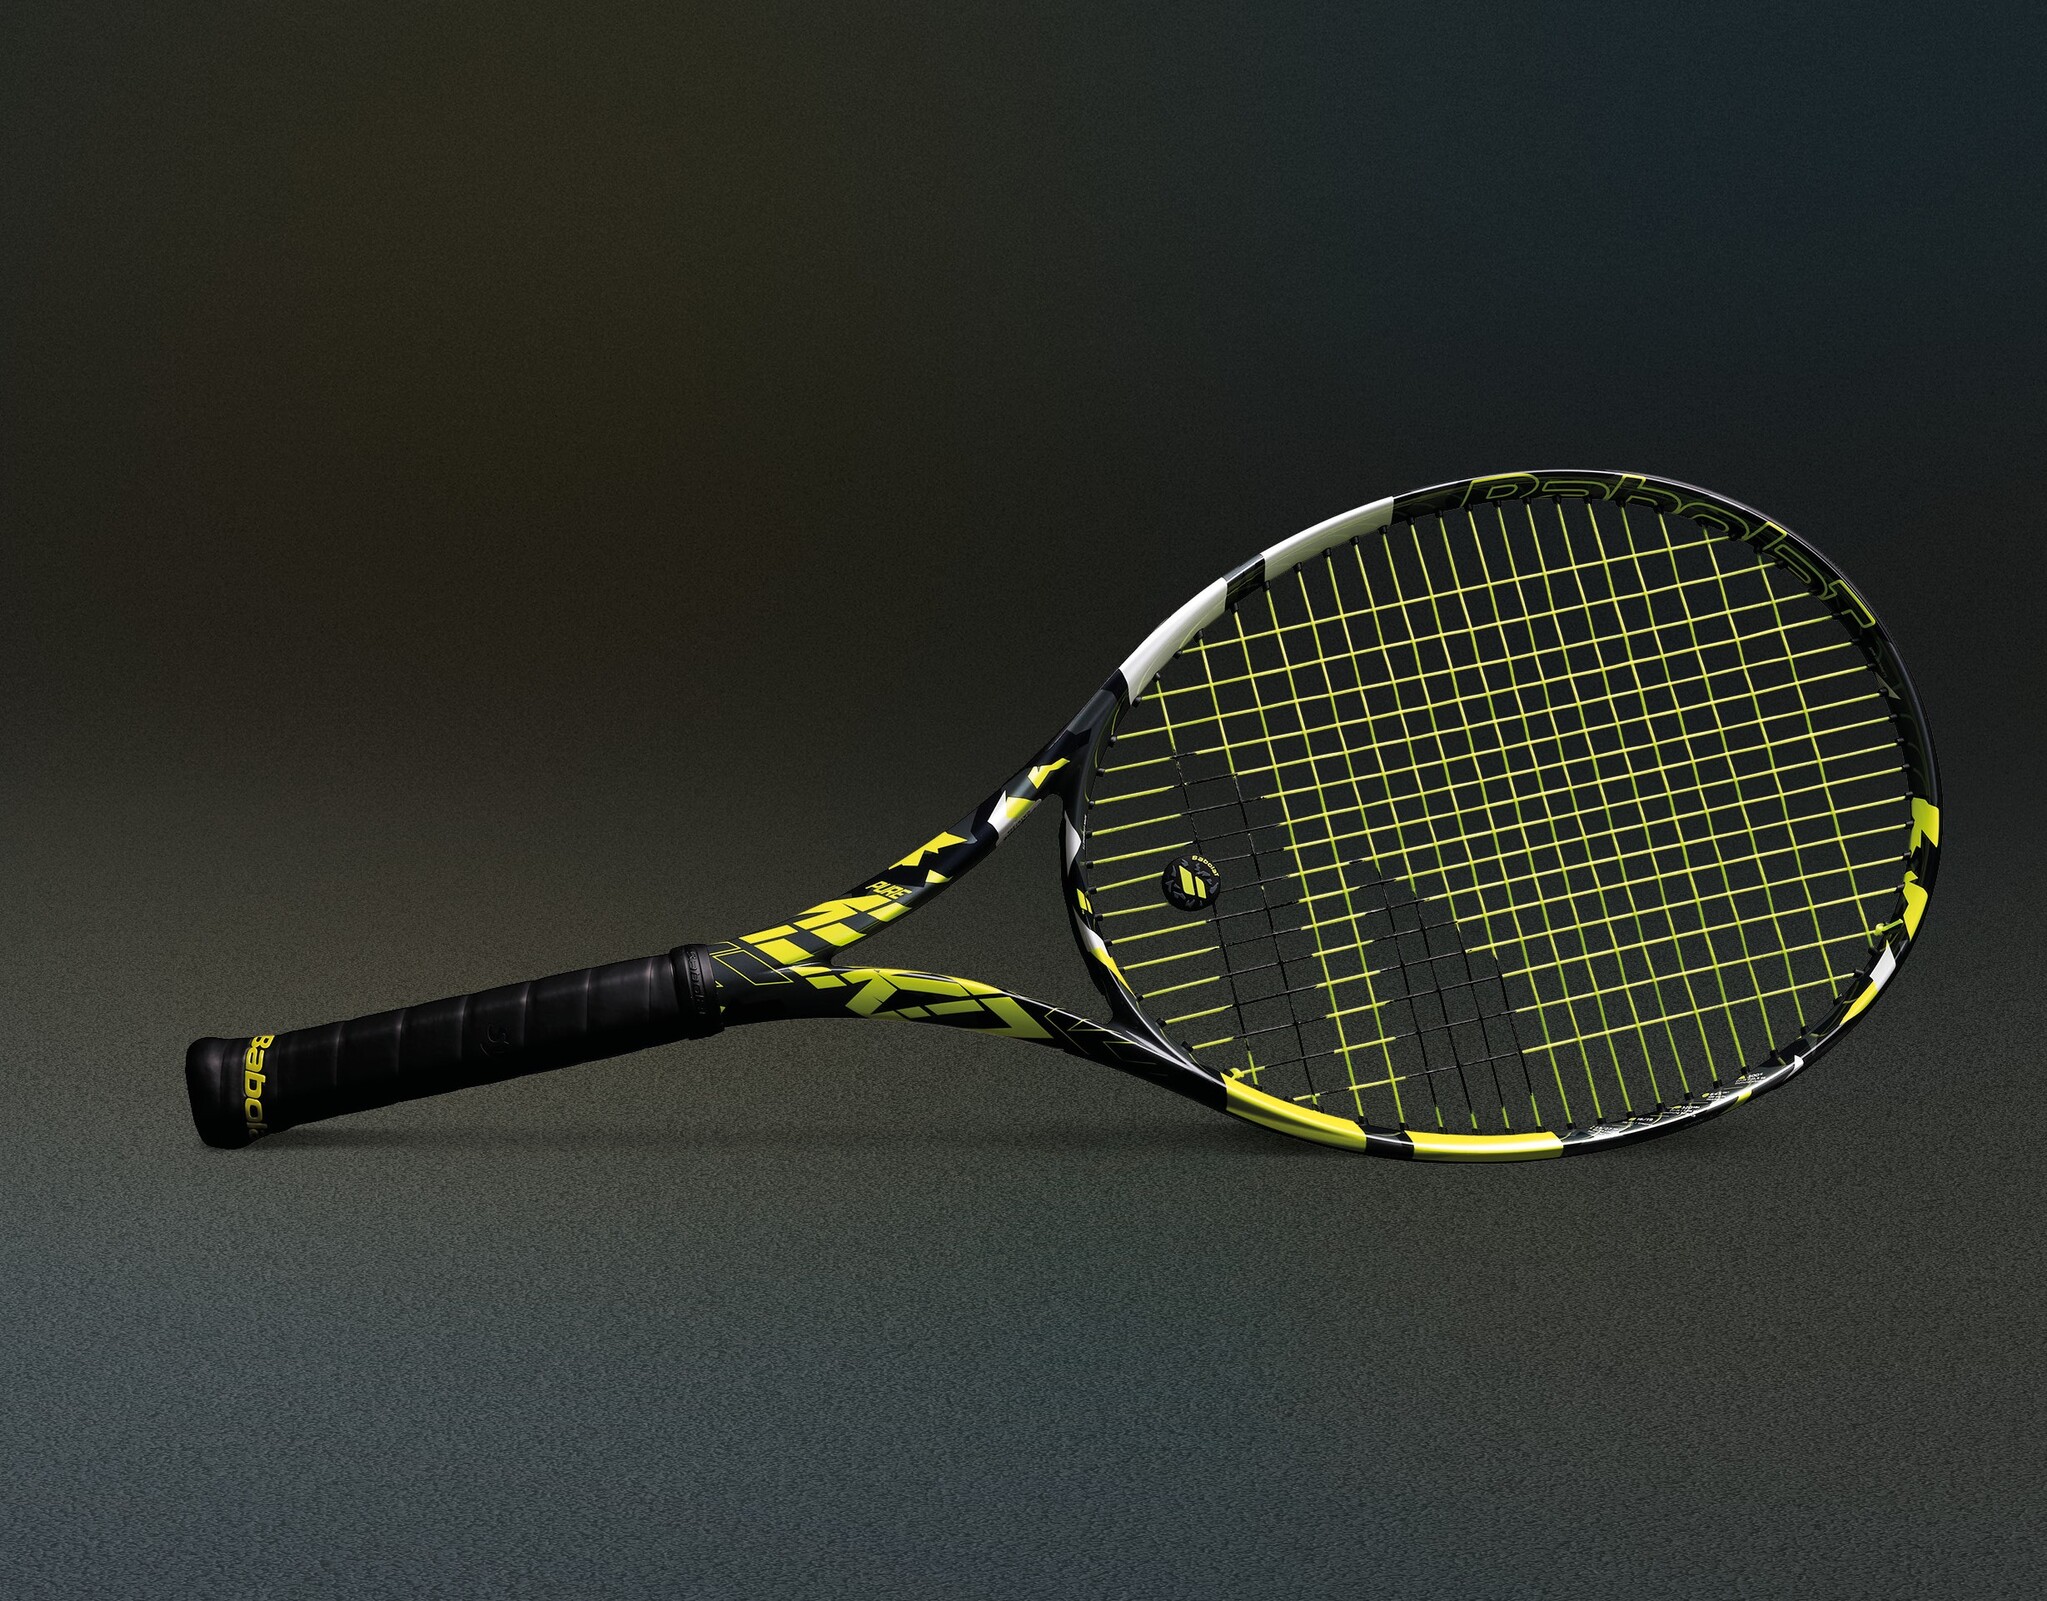 究極のスピンを生むテニスラケット【PURE AERO】シリーズの新製品を 